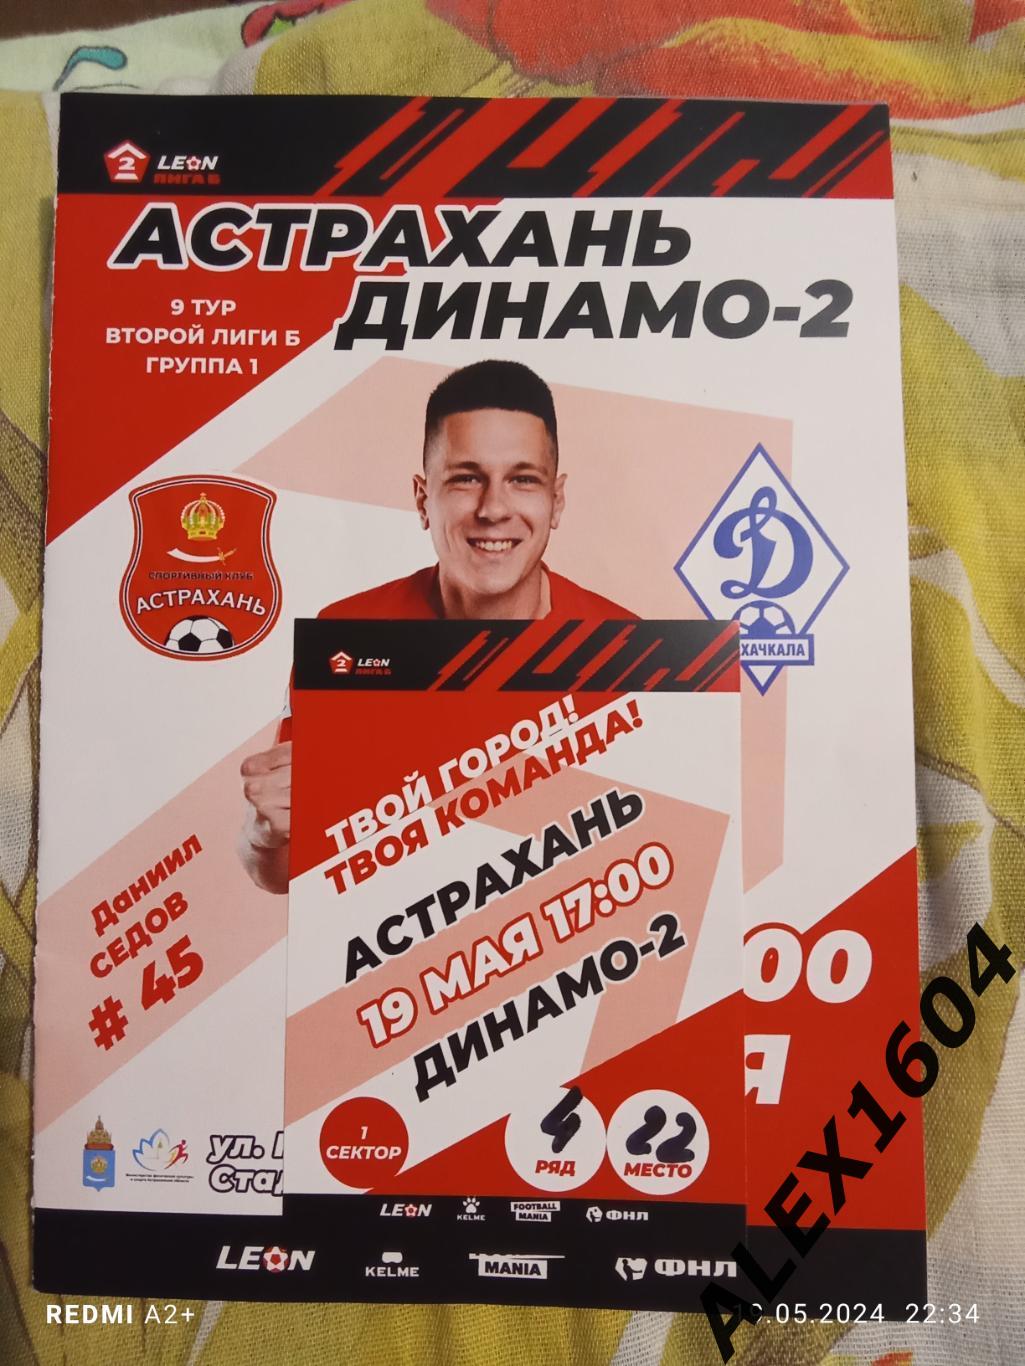 СК Астрахань --Динамо -2 Махачкала 19.05.2024 г. вторая лига Б гр. 1